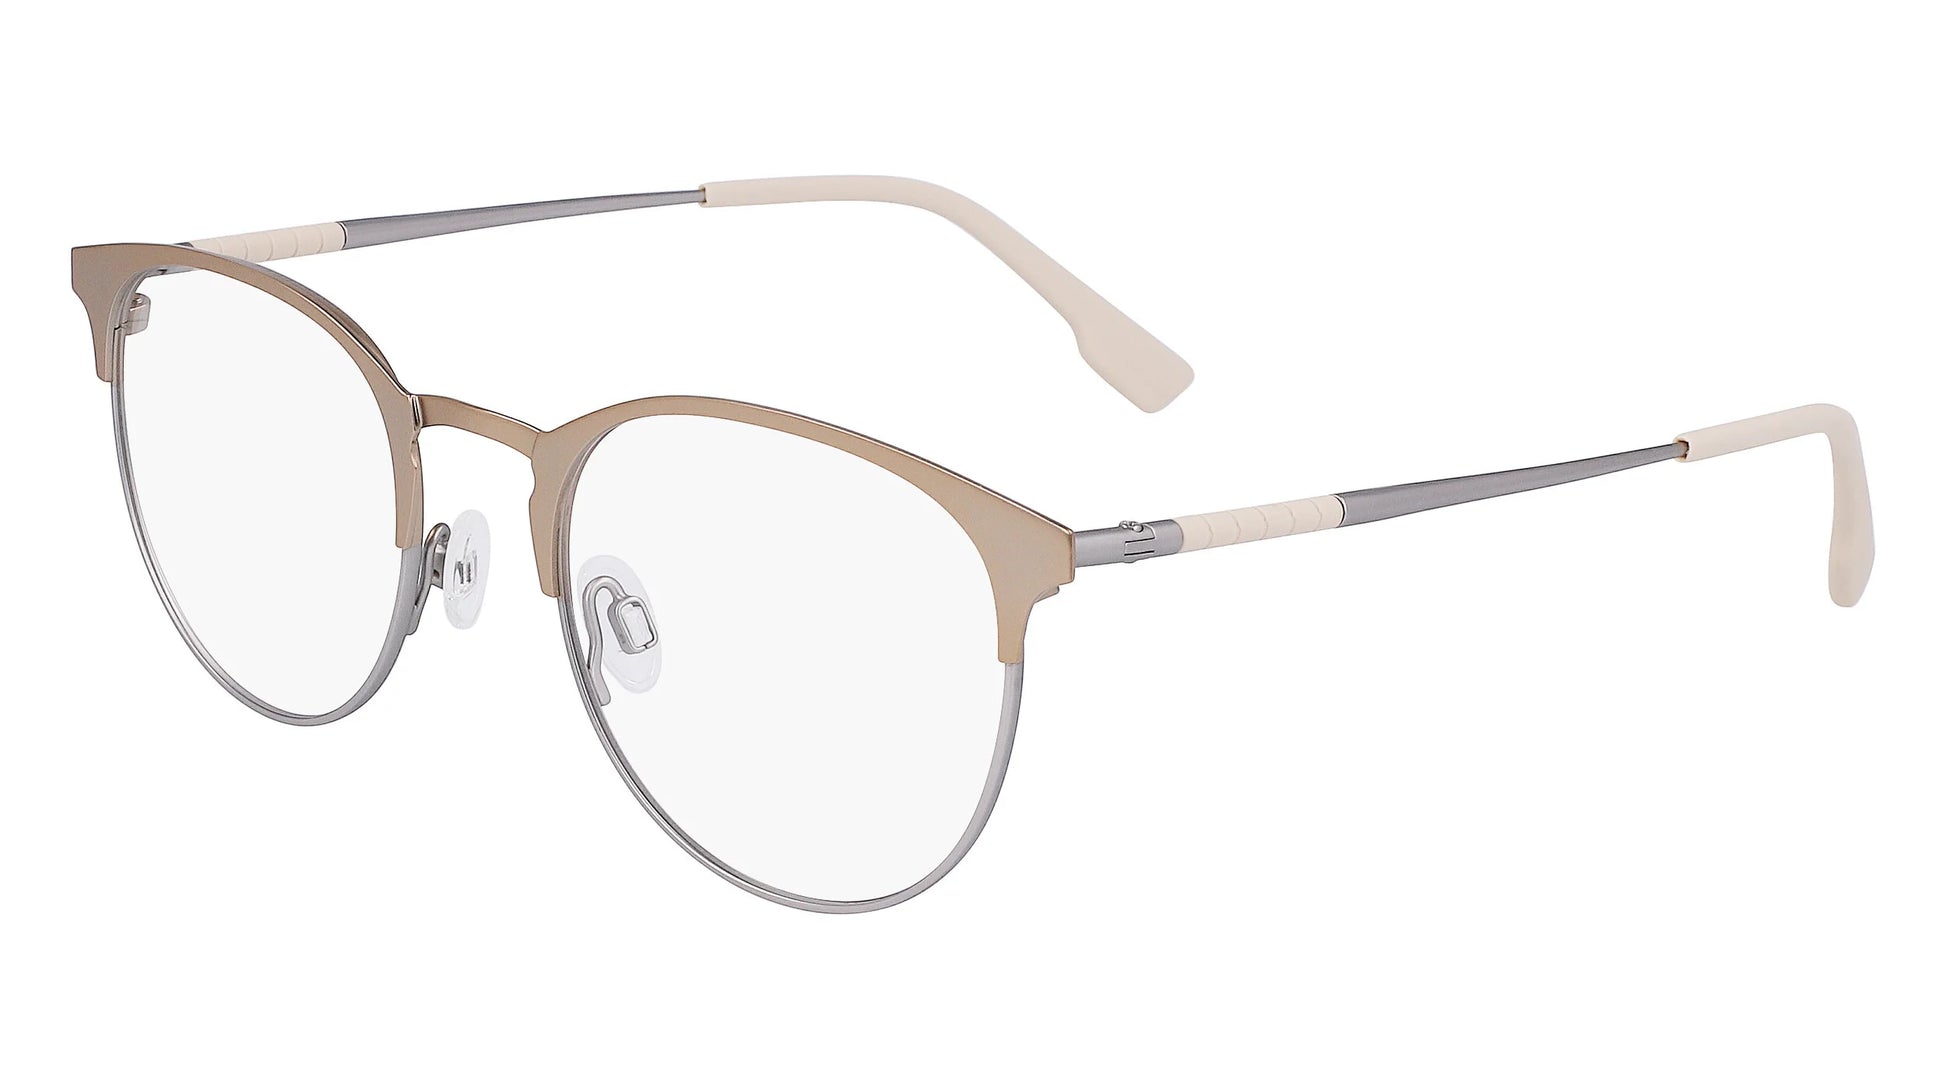 Flexon E1133 Eyeglasses Matte Light Gold